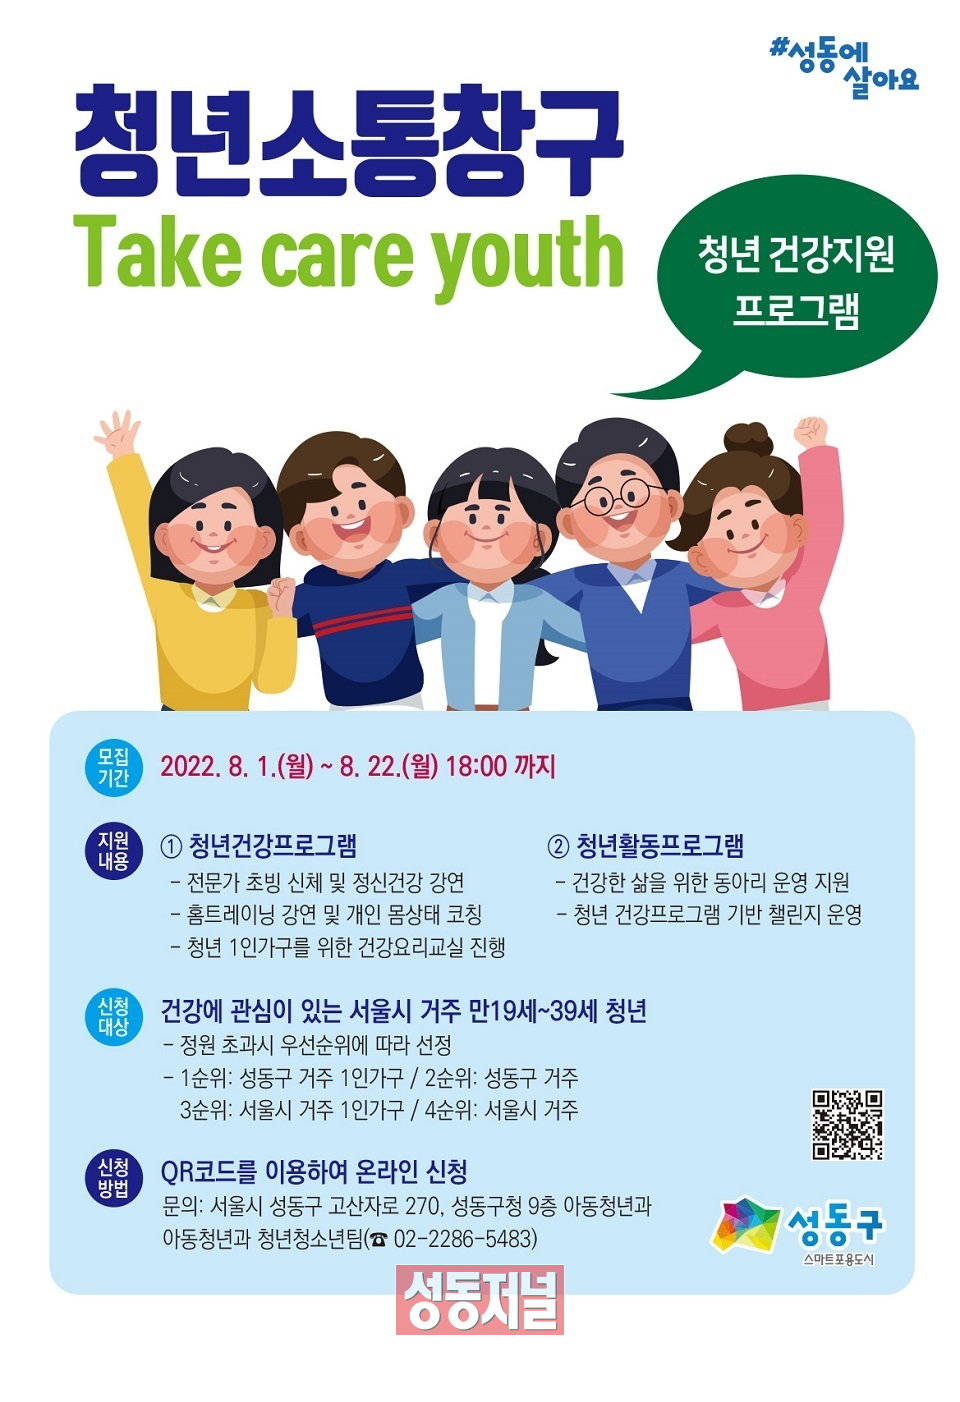 성동구의 청년 건강지원사업인 'Take care youth!' 포스터